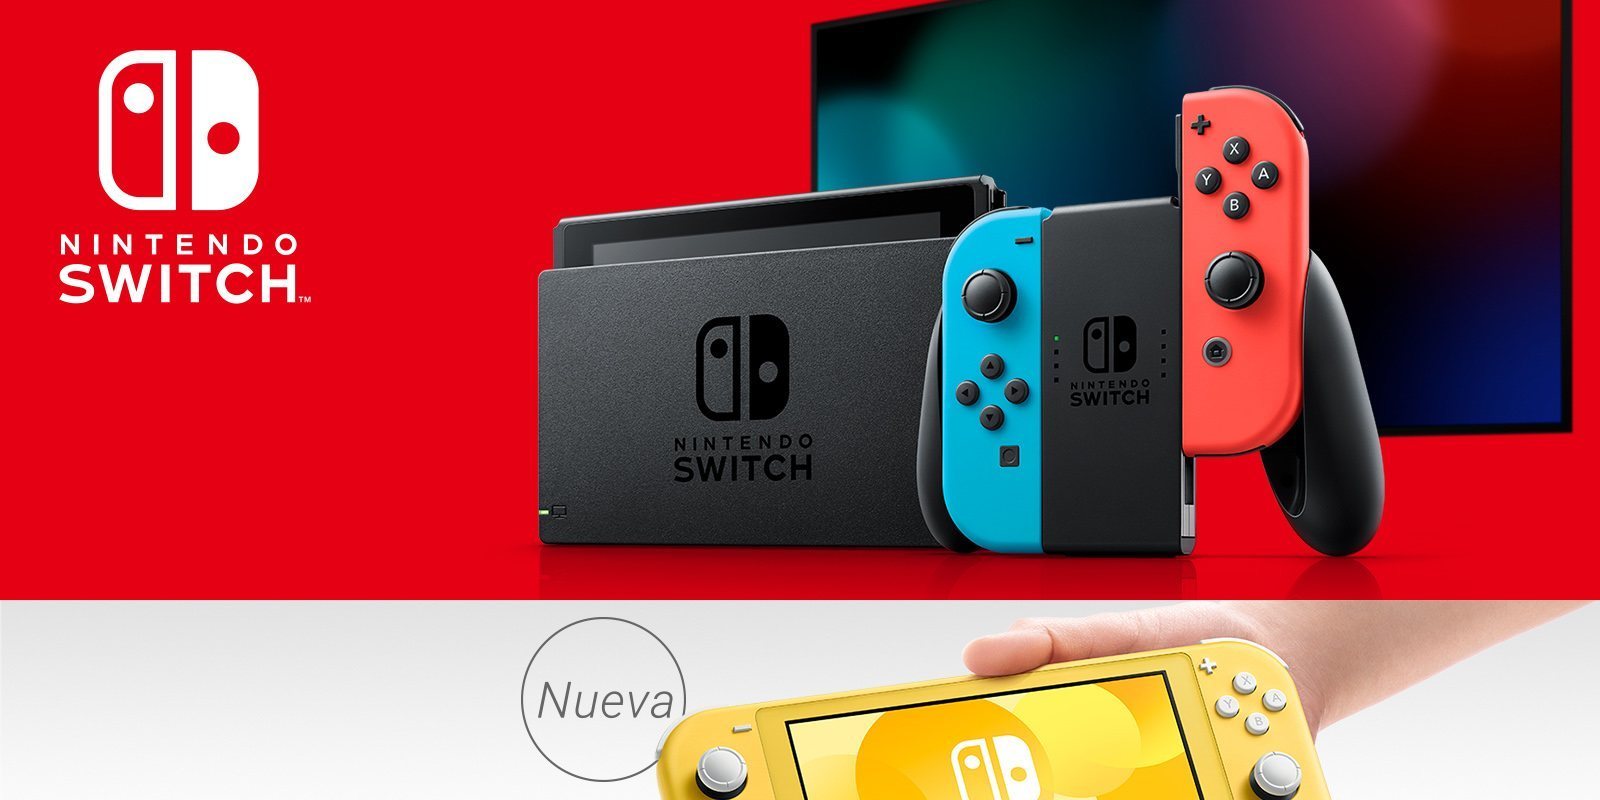 Nintendo asegura que no habrá un Nintendo Switch Pro en 2019, pero no se descarta un modelo superior